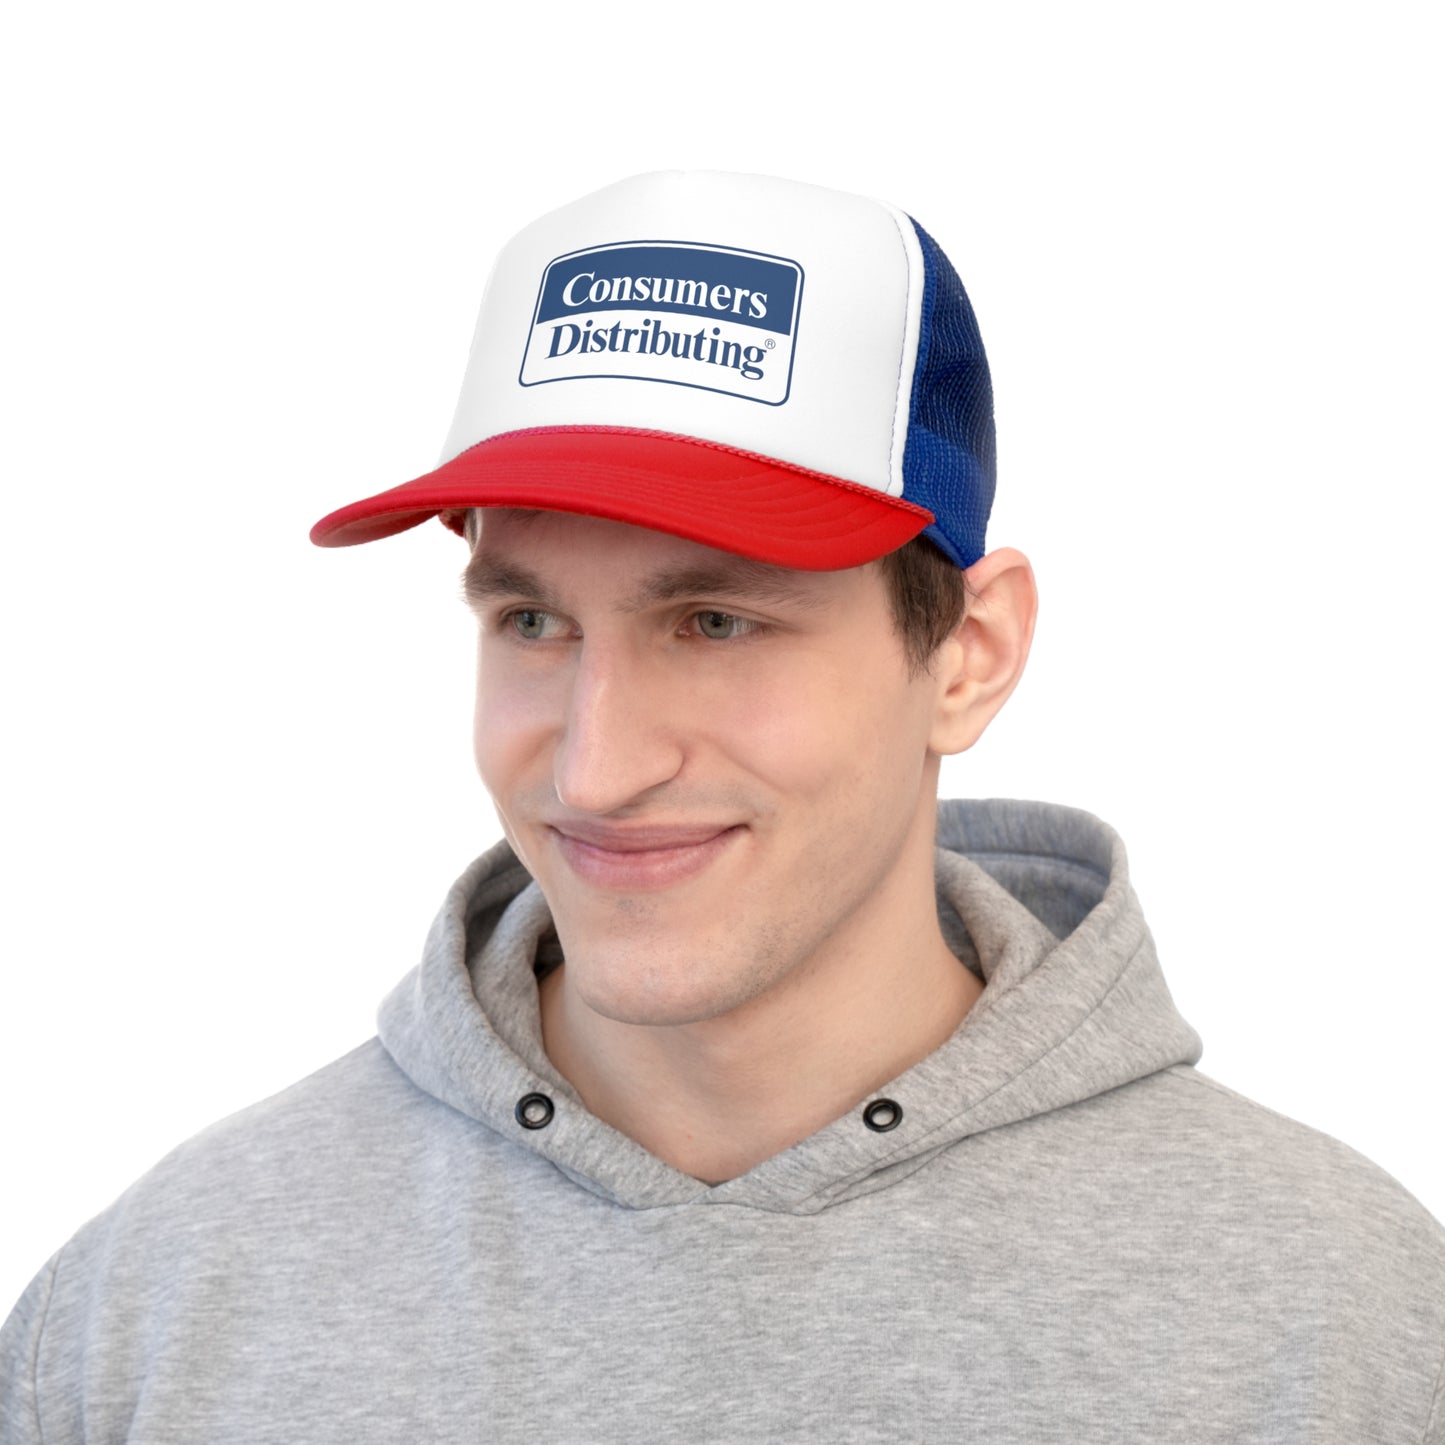 Consumers Distributing Retro Store Logo Canadian Nostalgia Trucker Cap